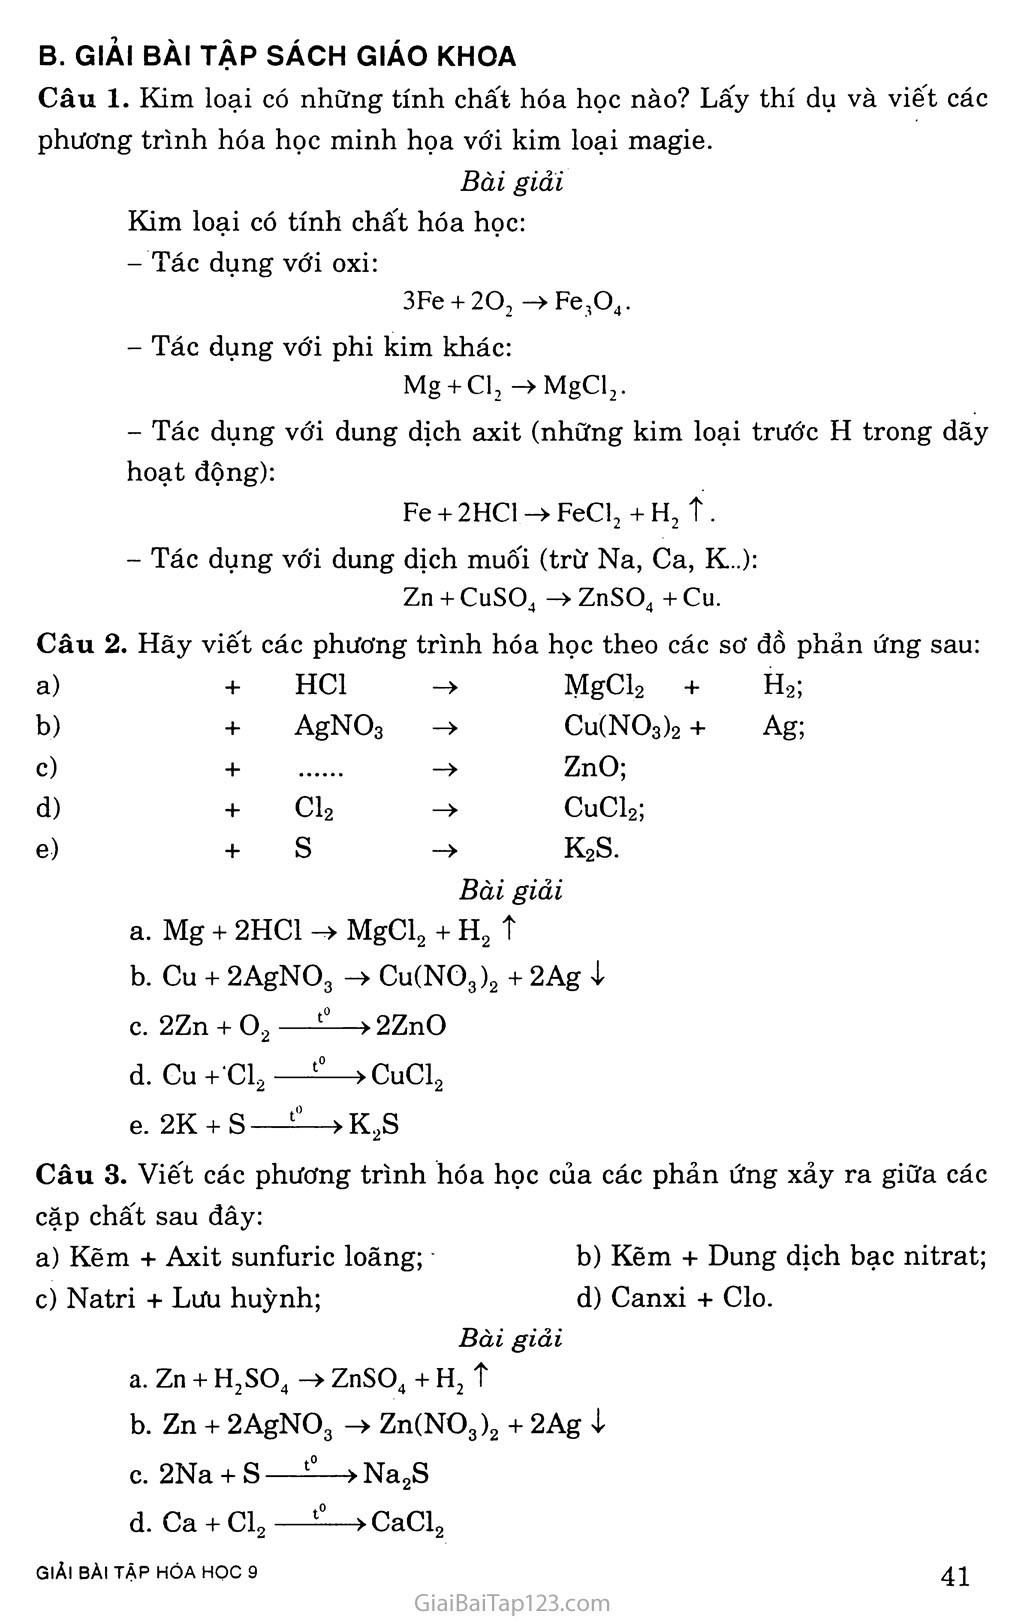 Bài 16. Tính chất hóa học của kim loại trang 2